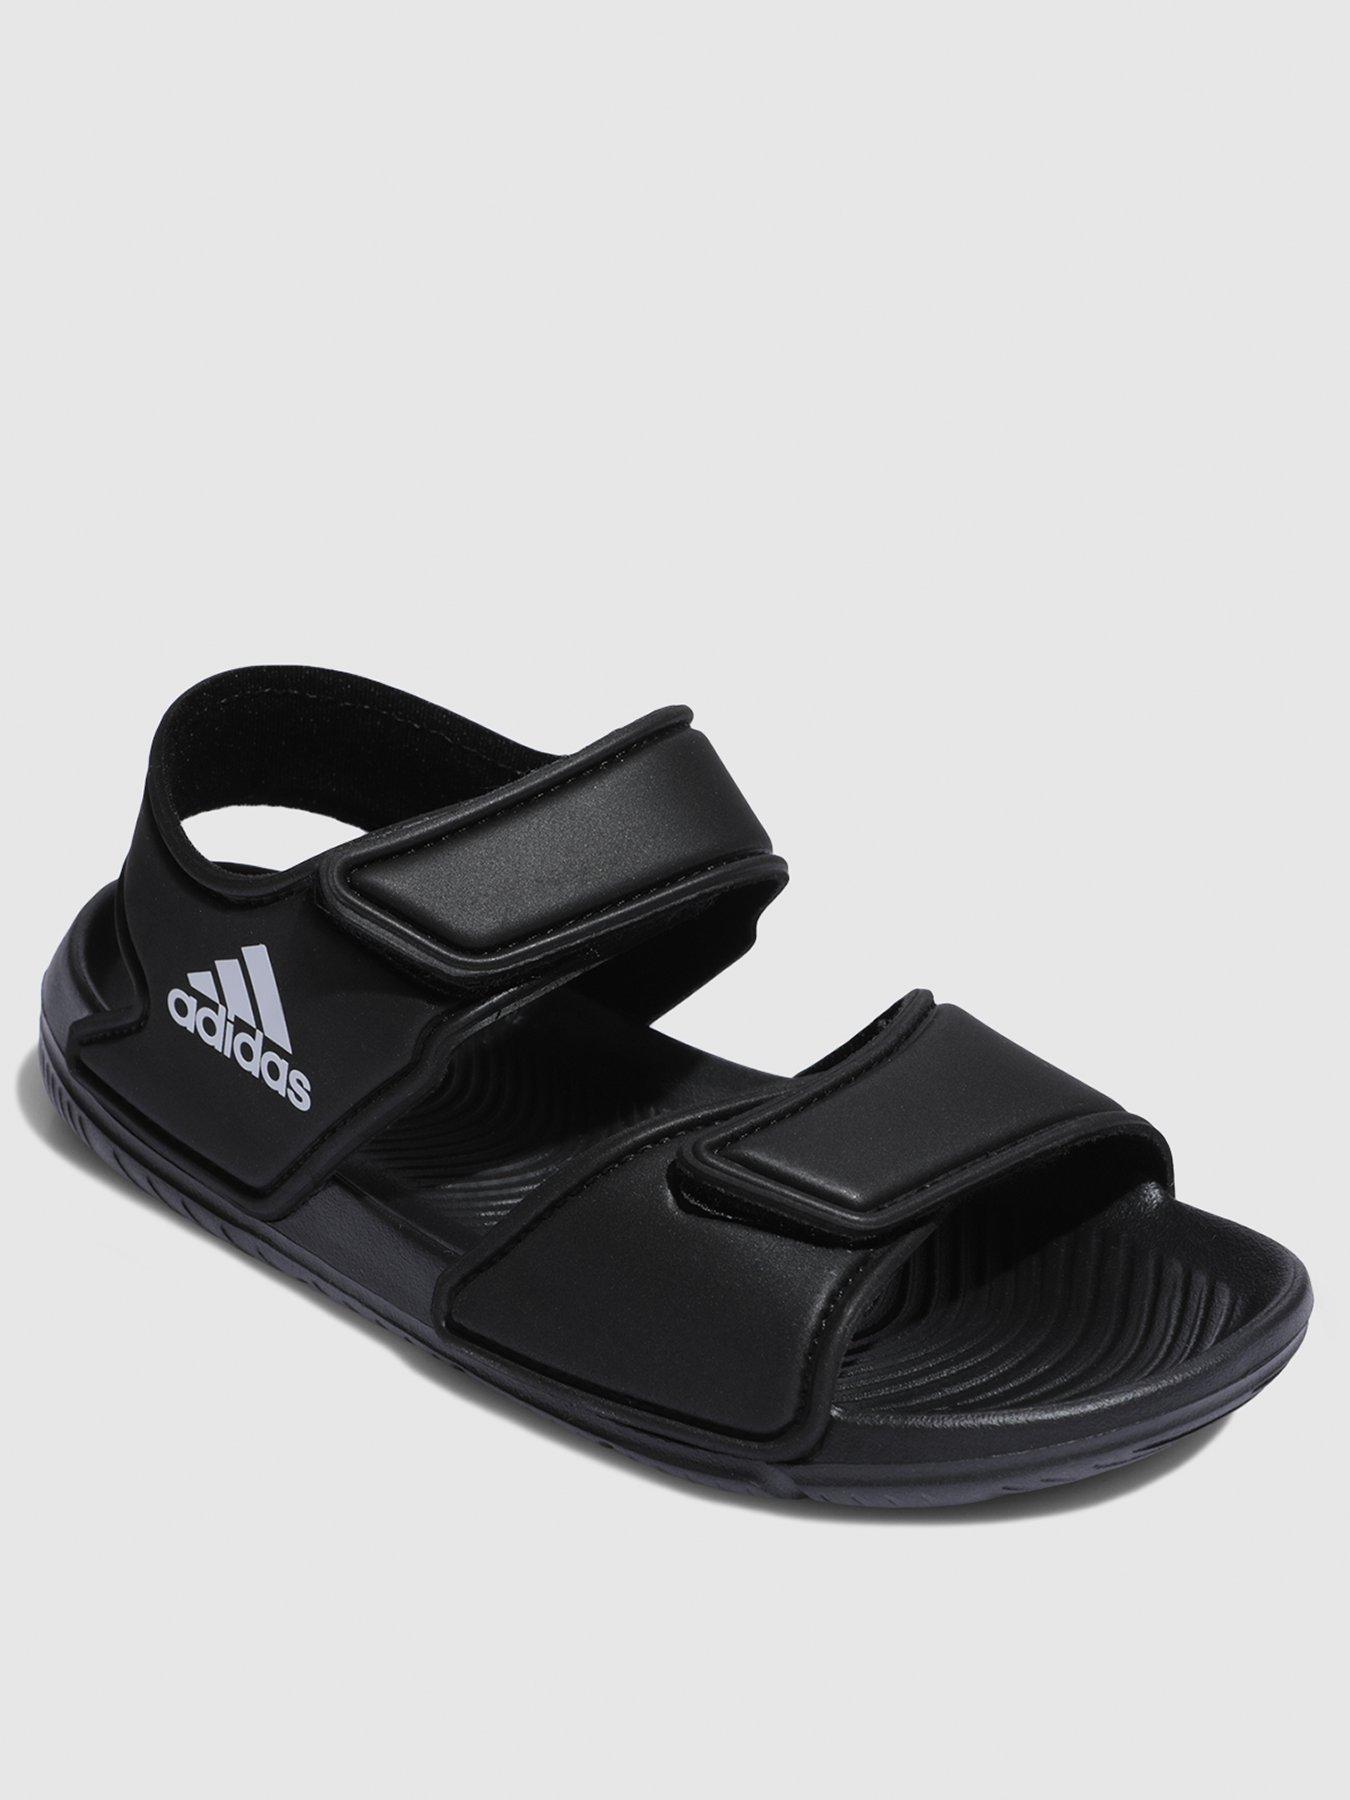 altaswim sandals adidas